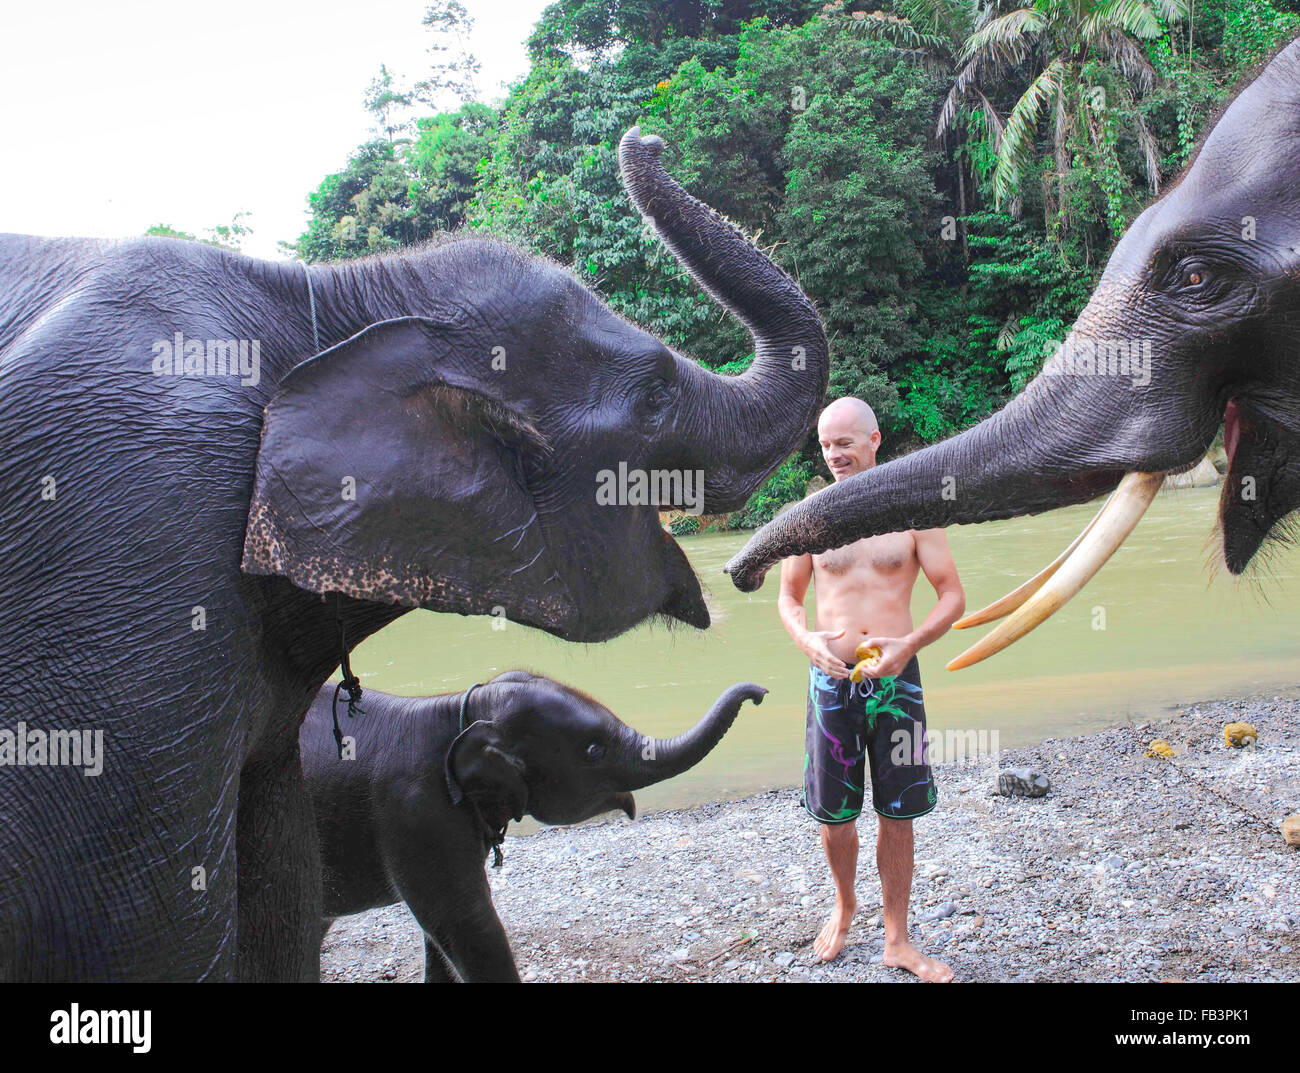 Man feeding elephants bananas Stock Photo